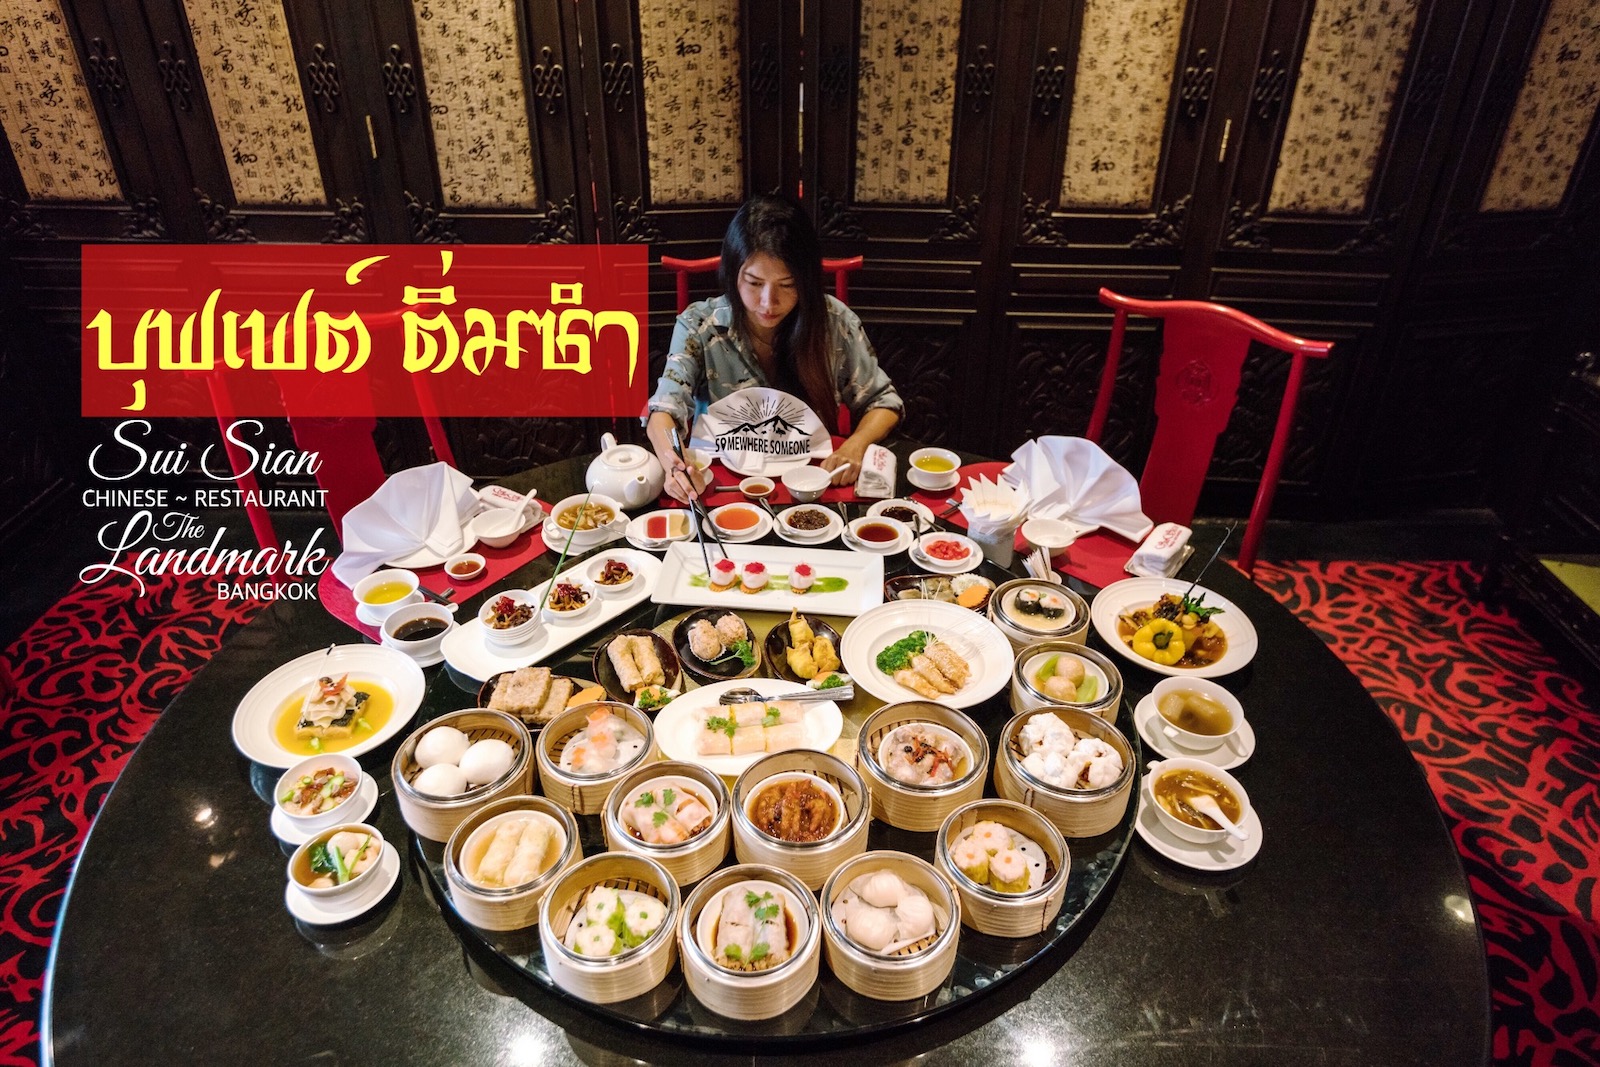 อล งการบ ฟเฟ ต ต มซำ ท ห องอาหาร Sui Sian โรงแรม The Landmark Bangkok By Somewhere Someone Pantip